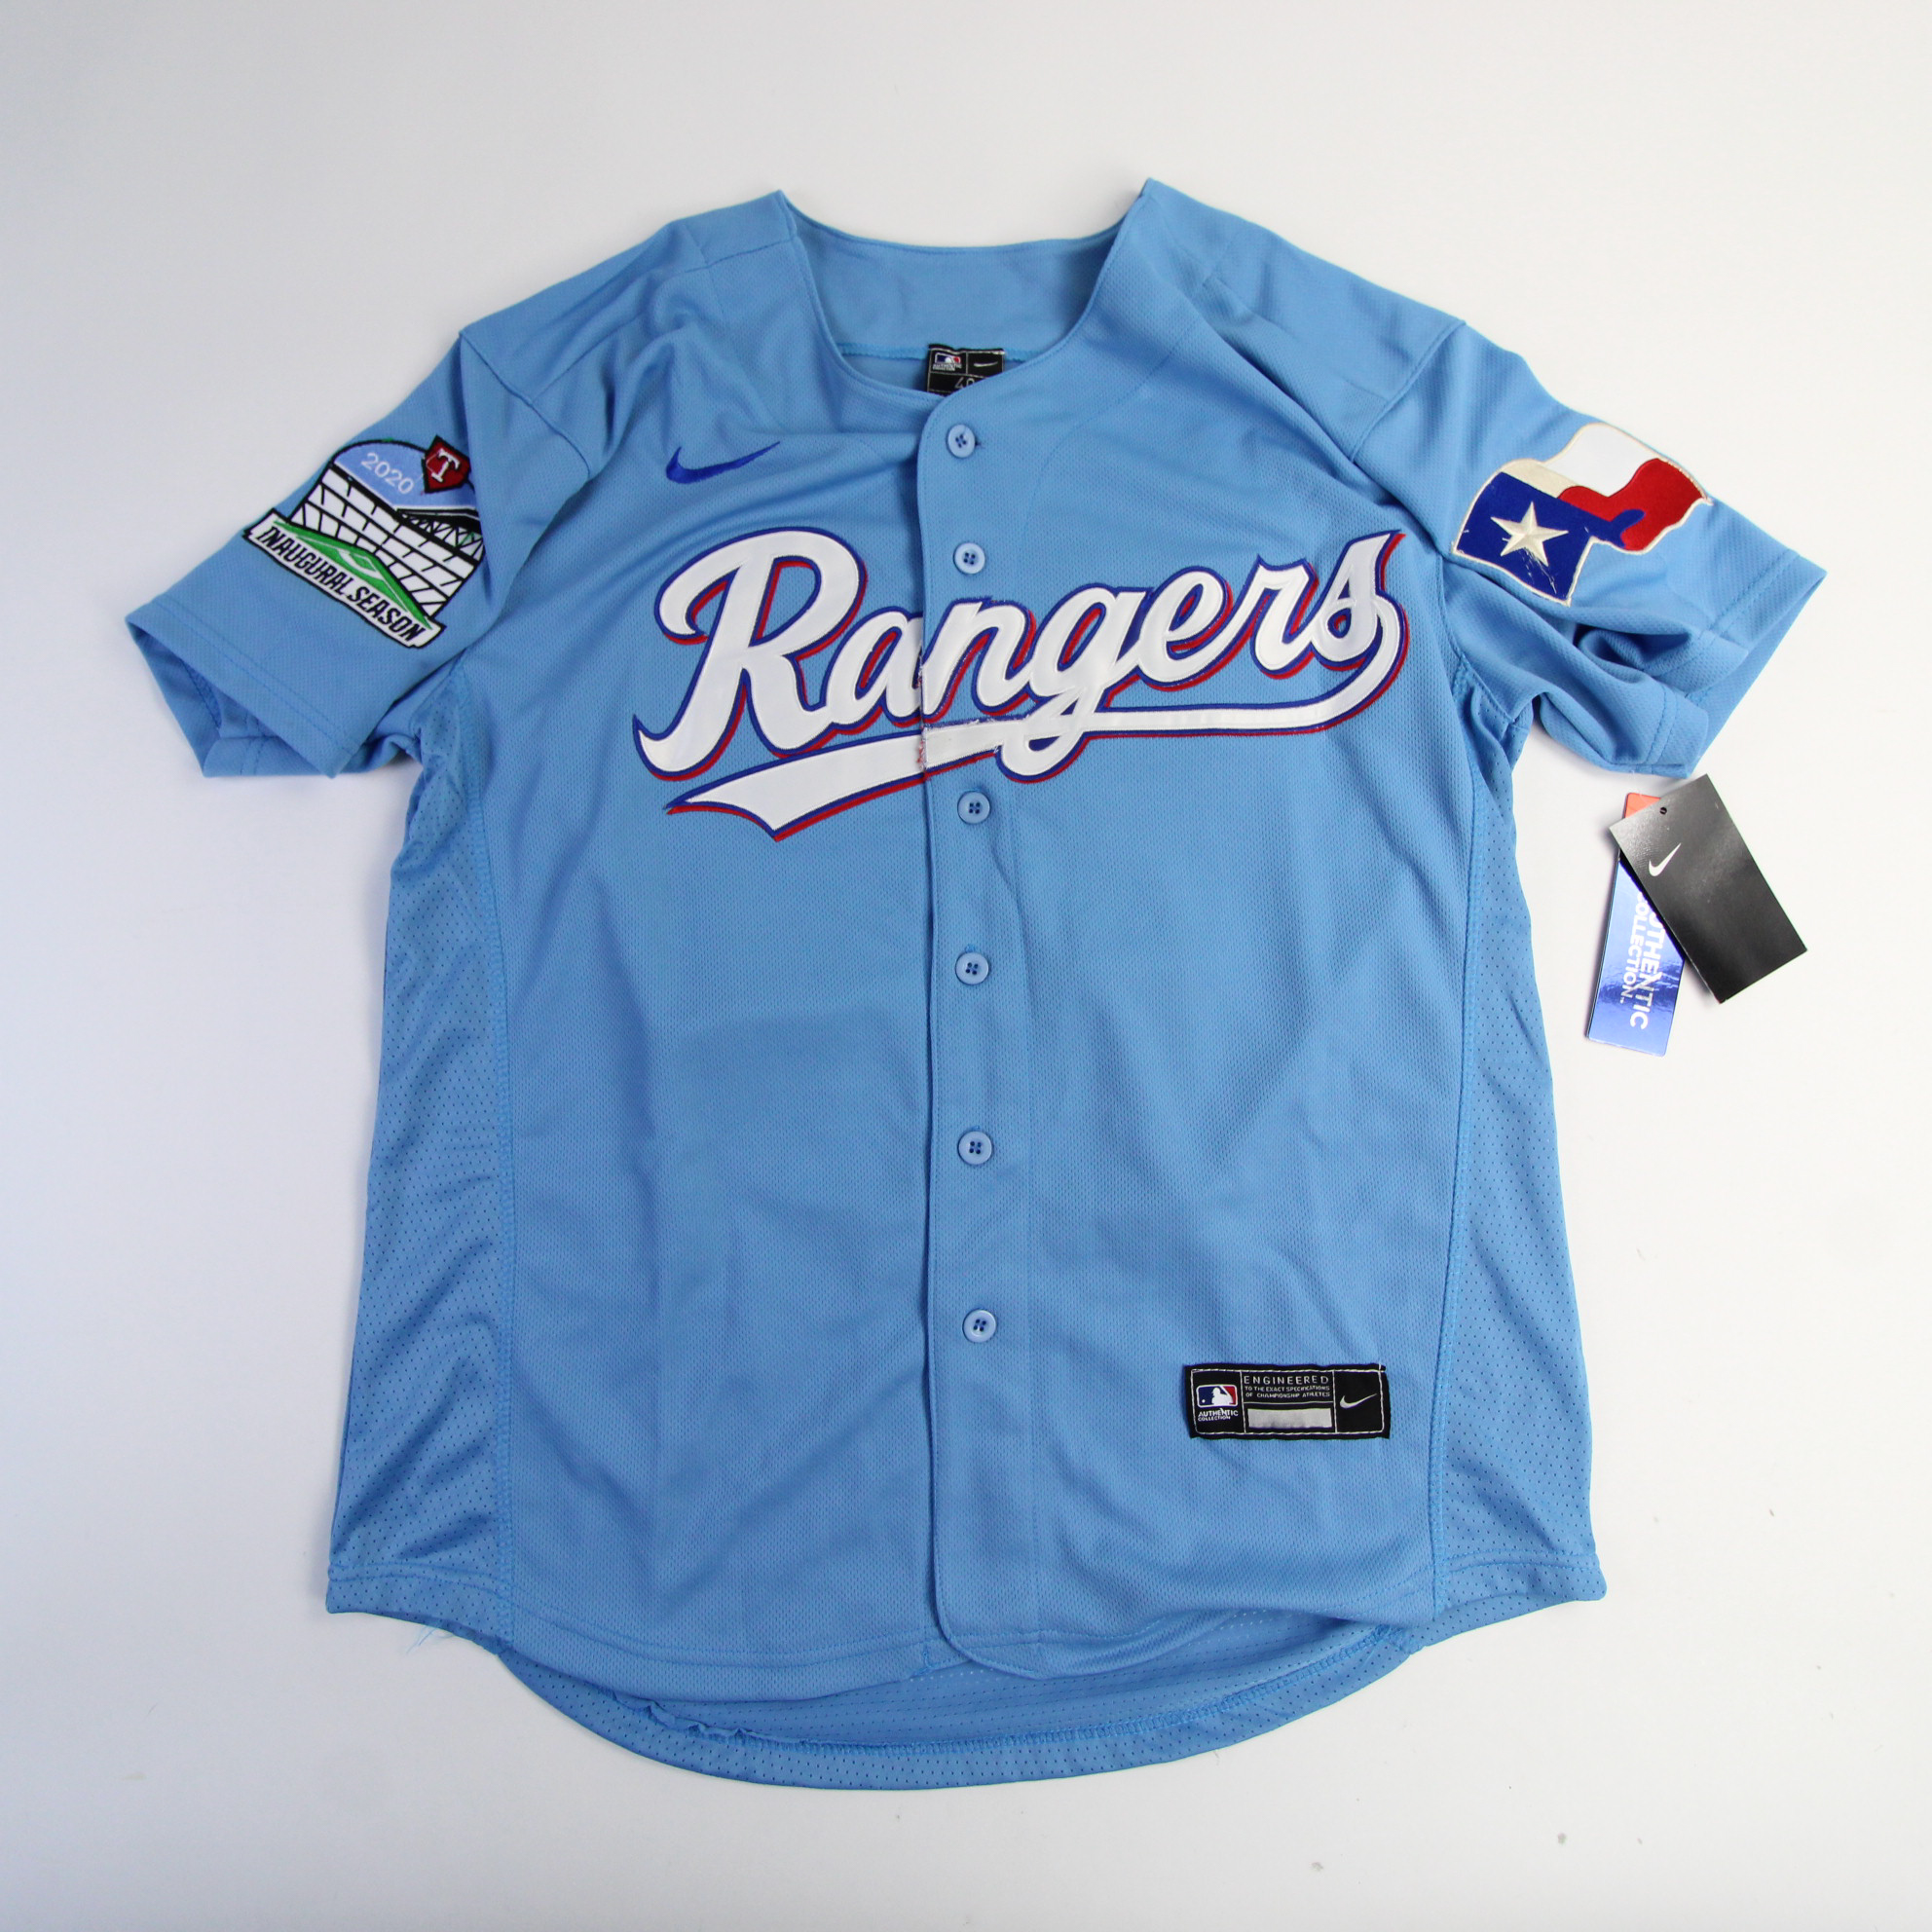 Texas Rangers Nike MLB Authentic Game Jersey - Baseball Men's Light Blue New